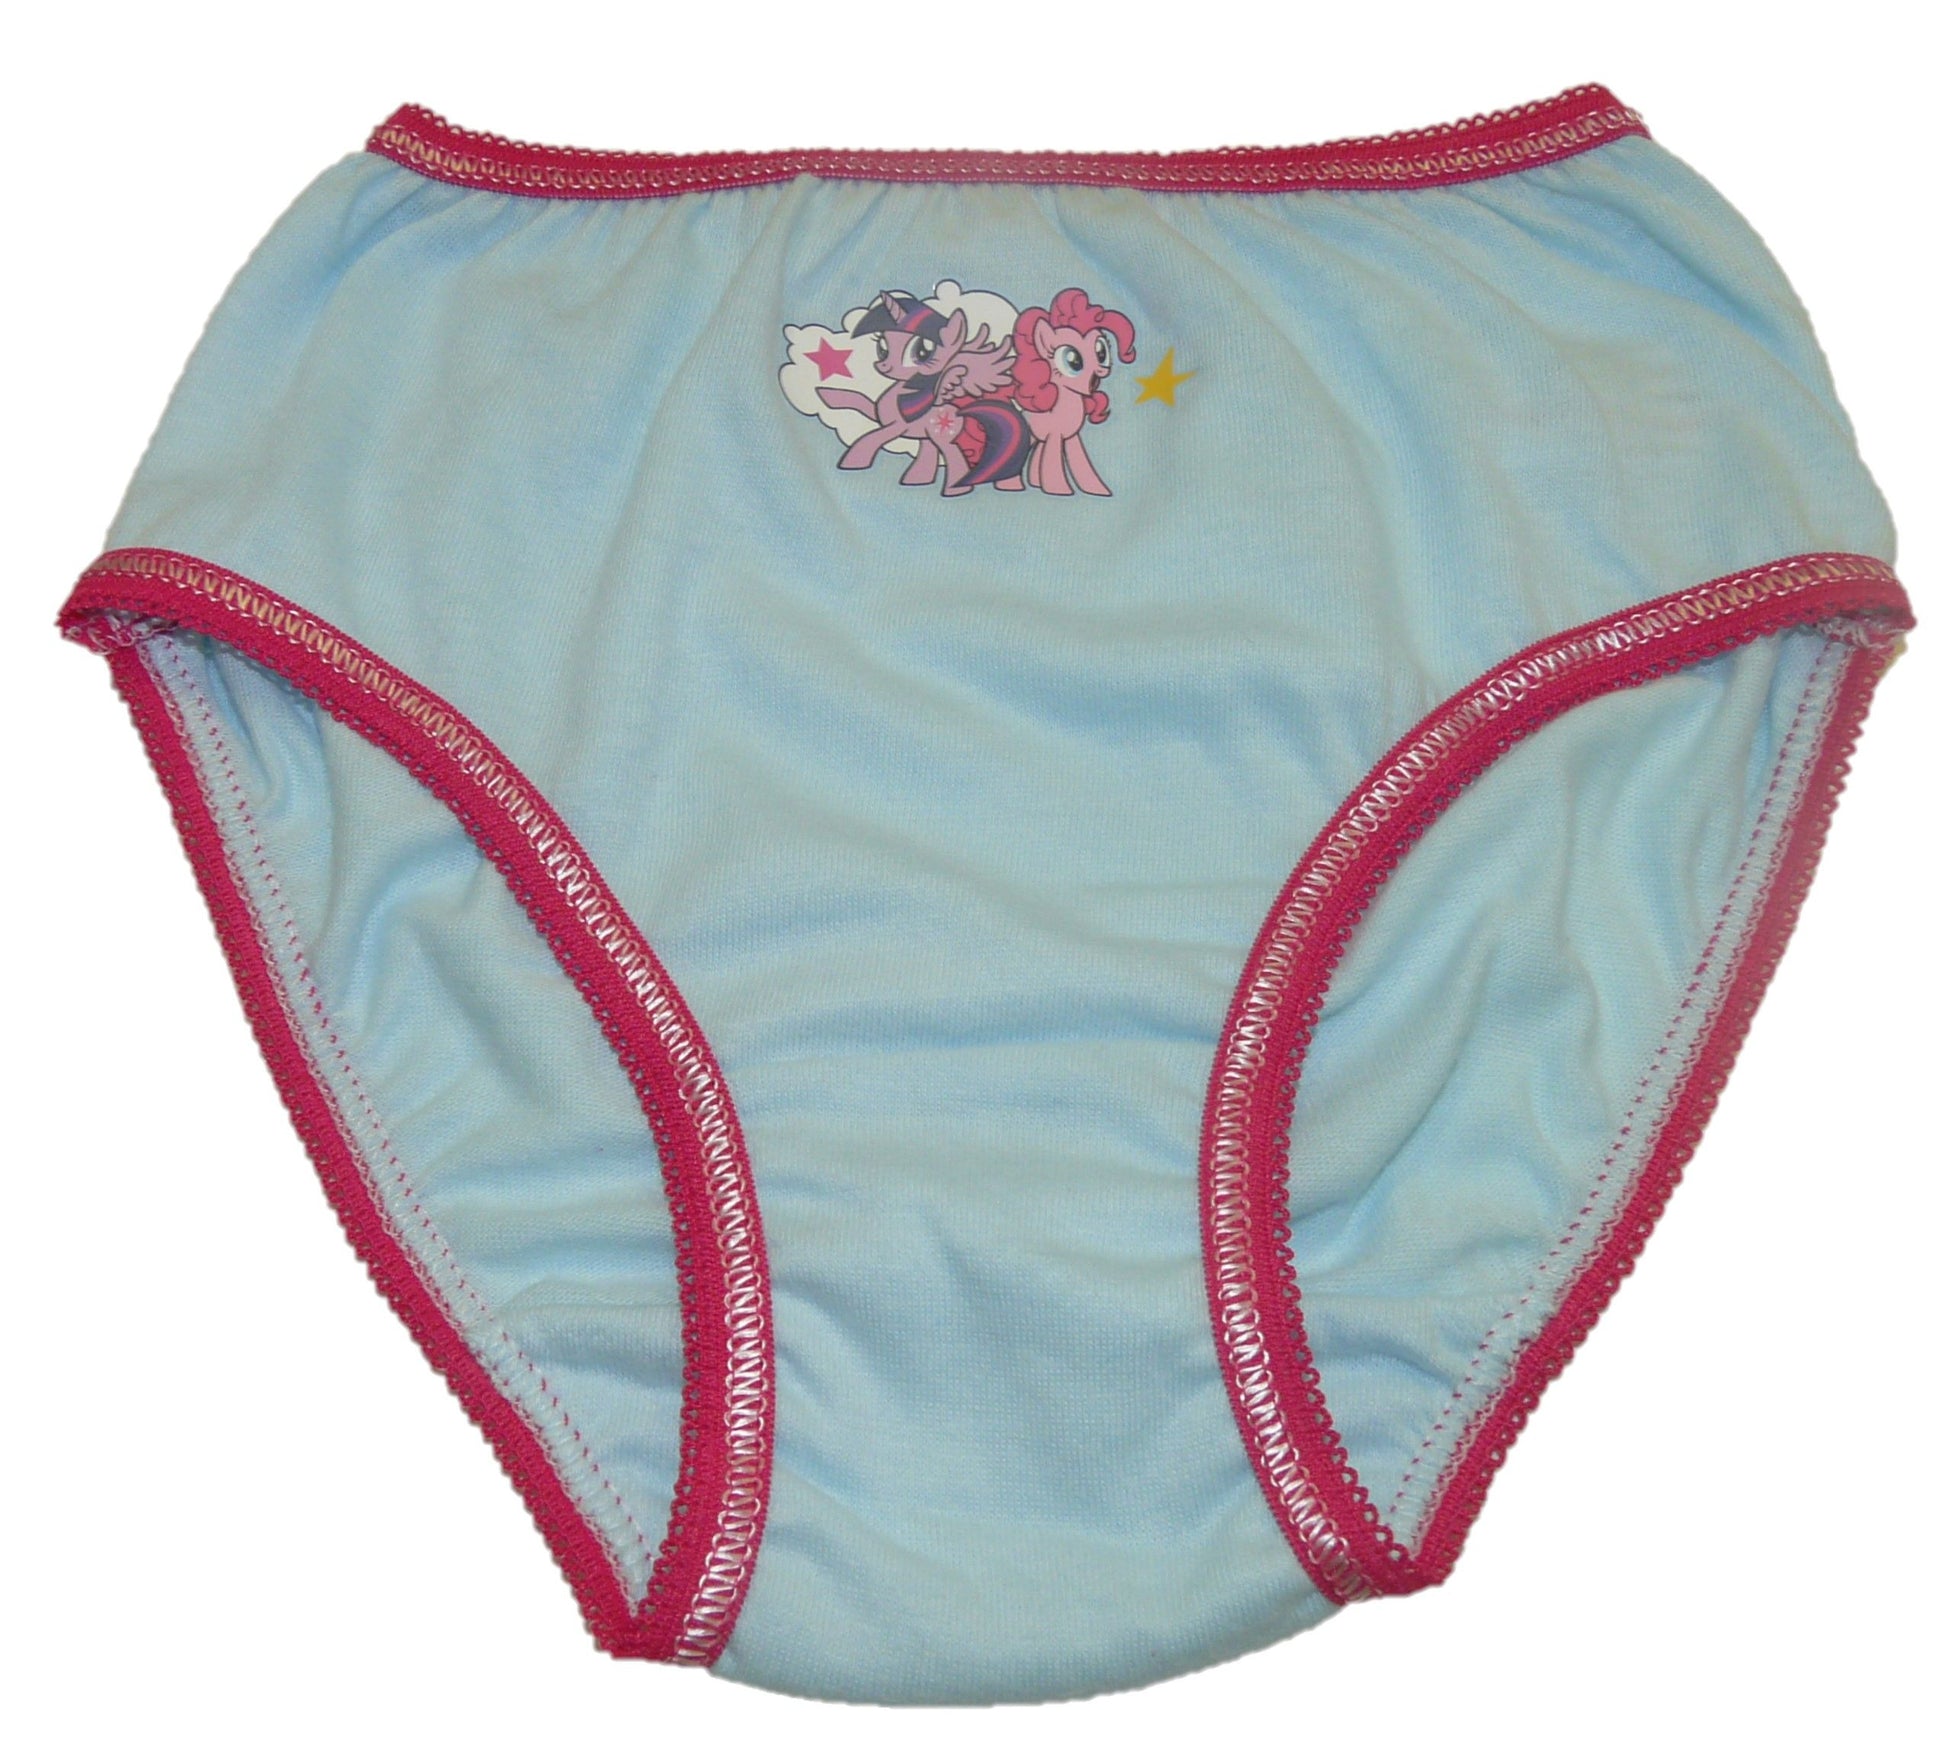 My Little Pony Girls 3 Pack Cotton Knickers Underwear Briefs